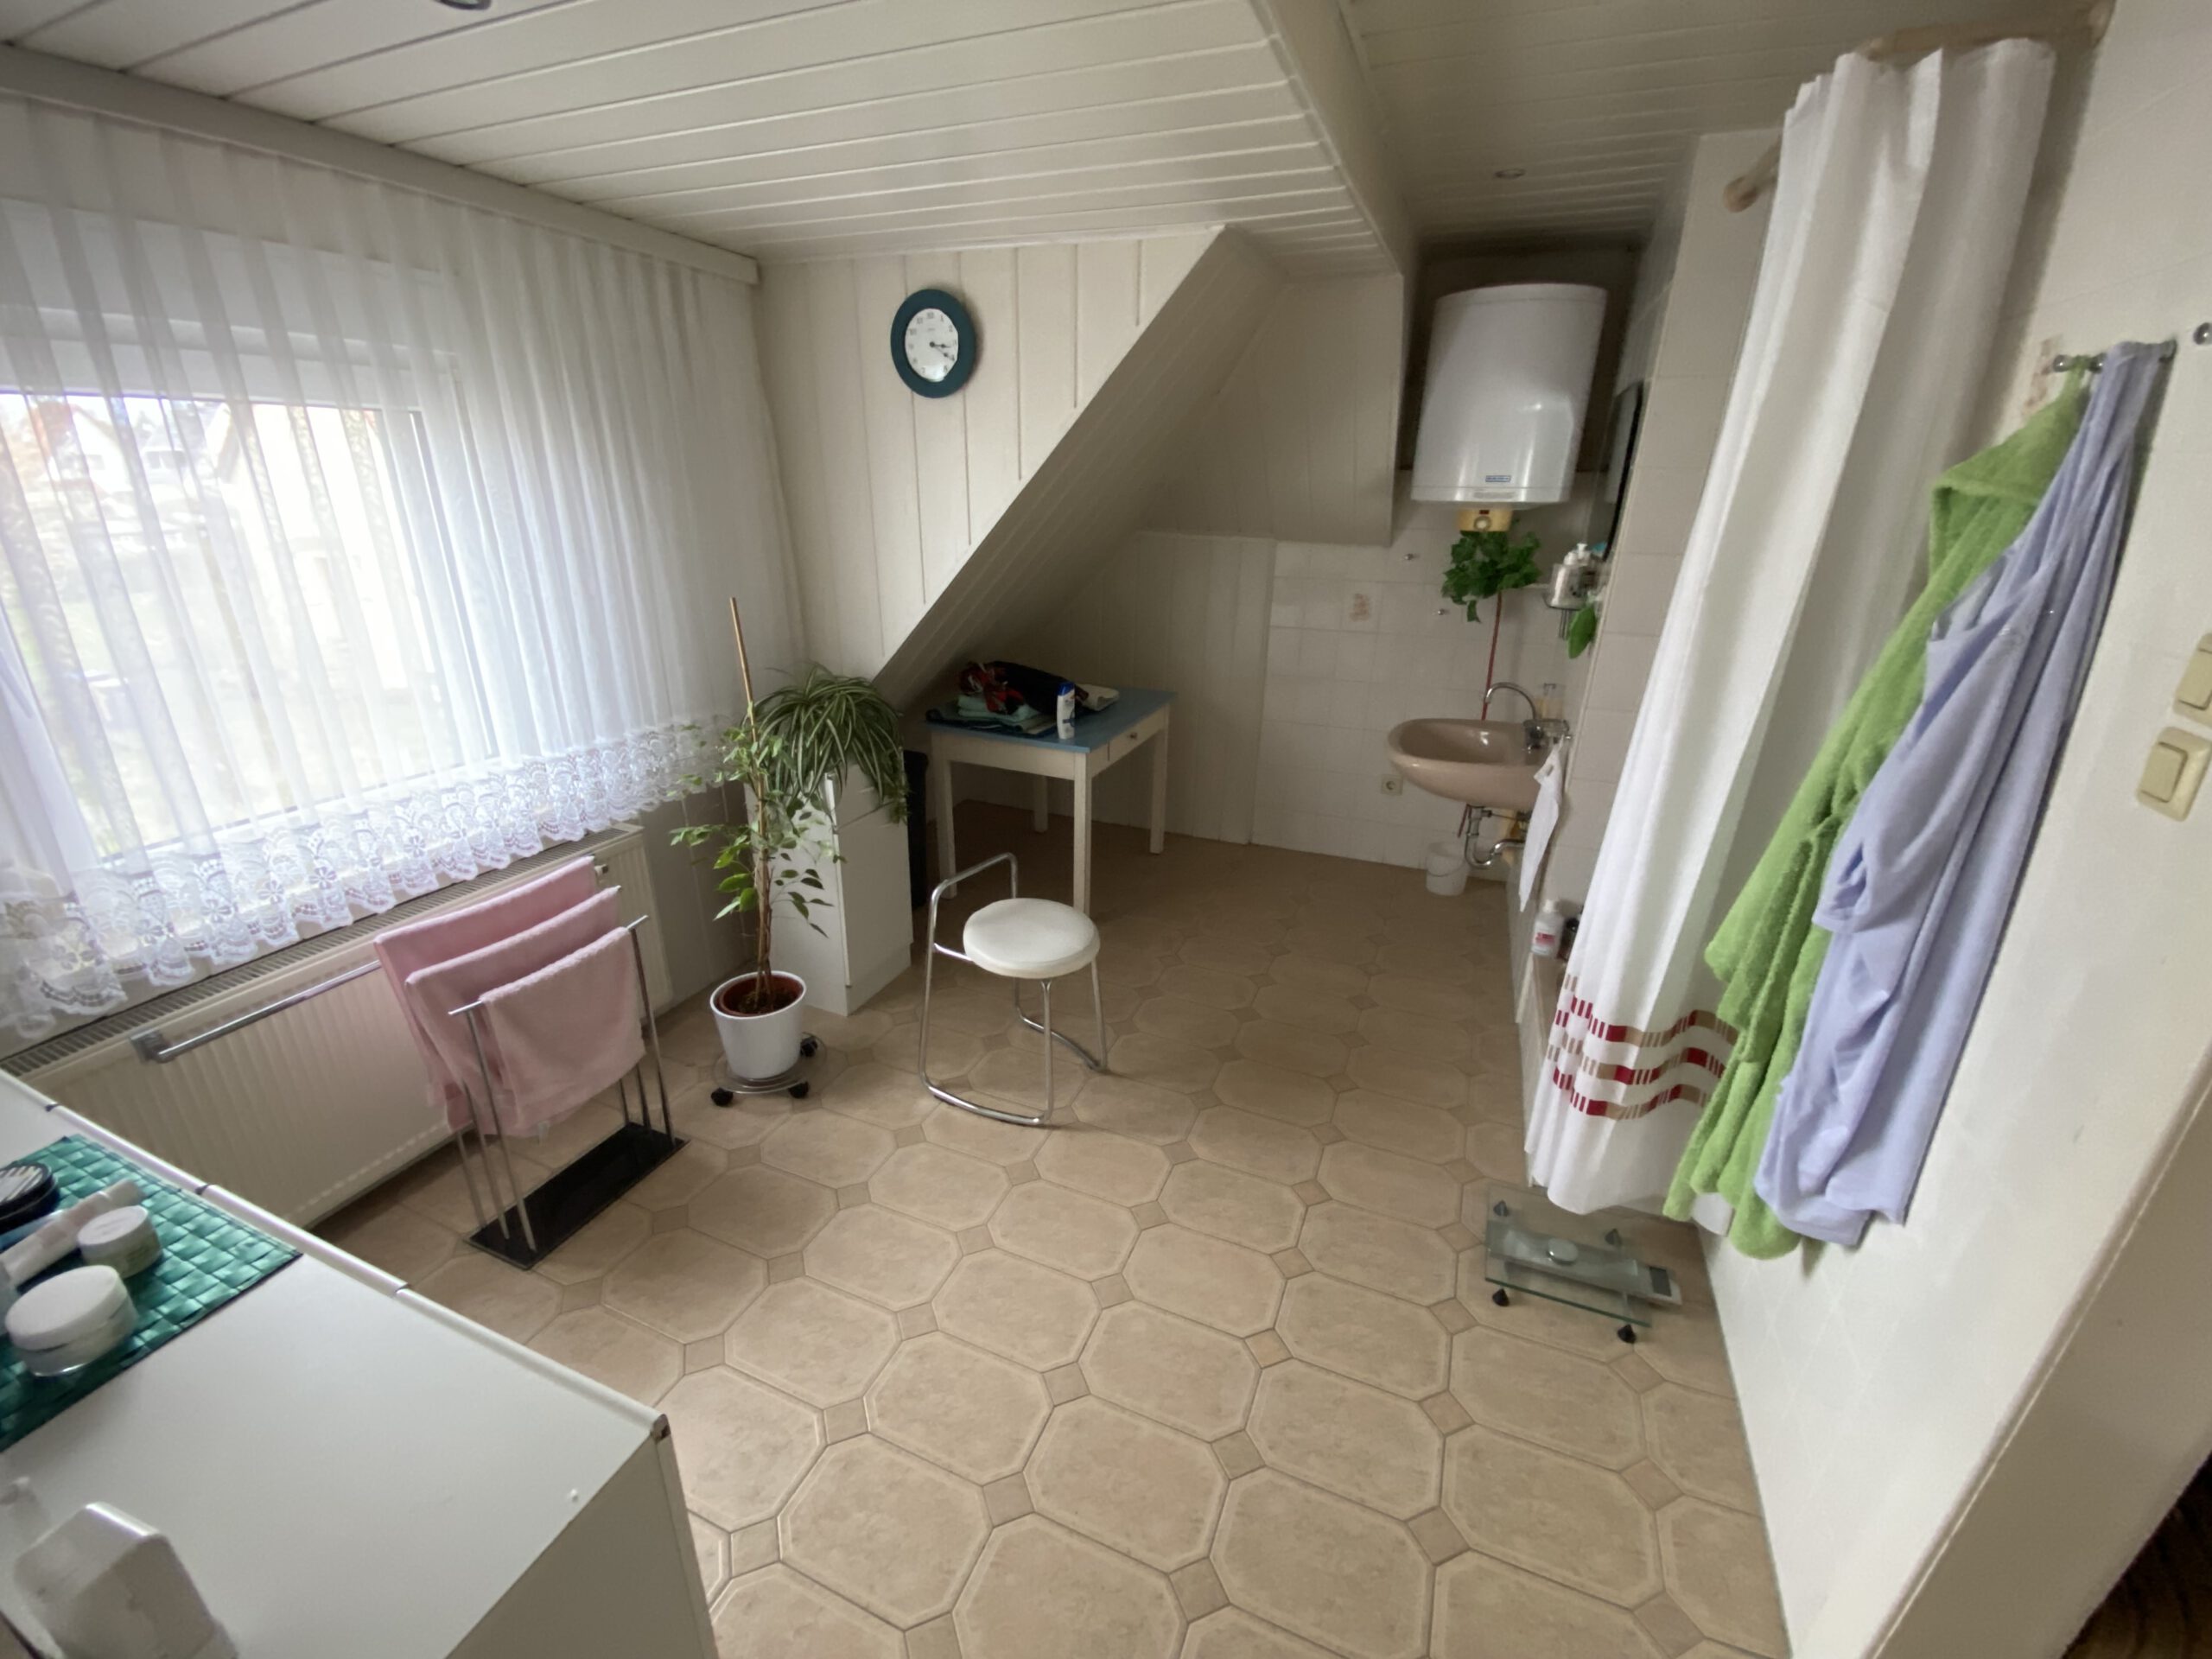 Einfamilienhaus in der Frohen Zukunft - Badezimmer